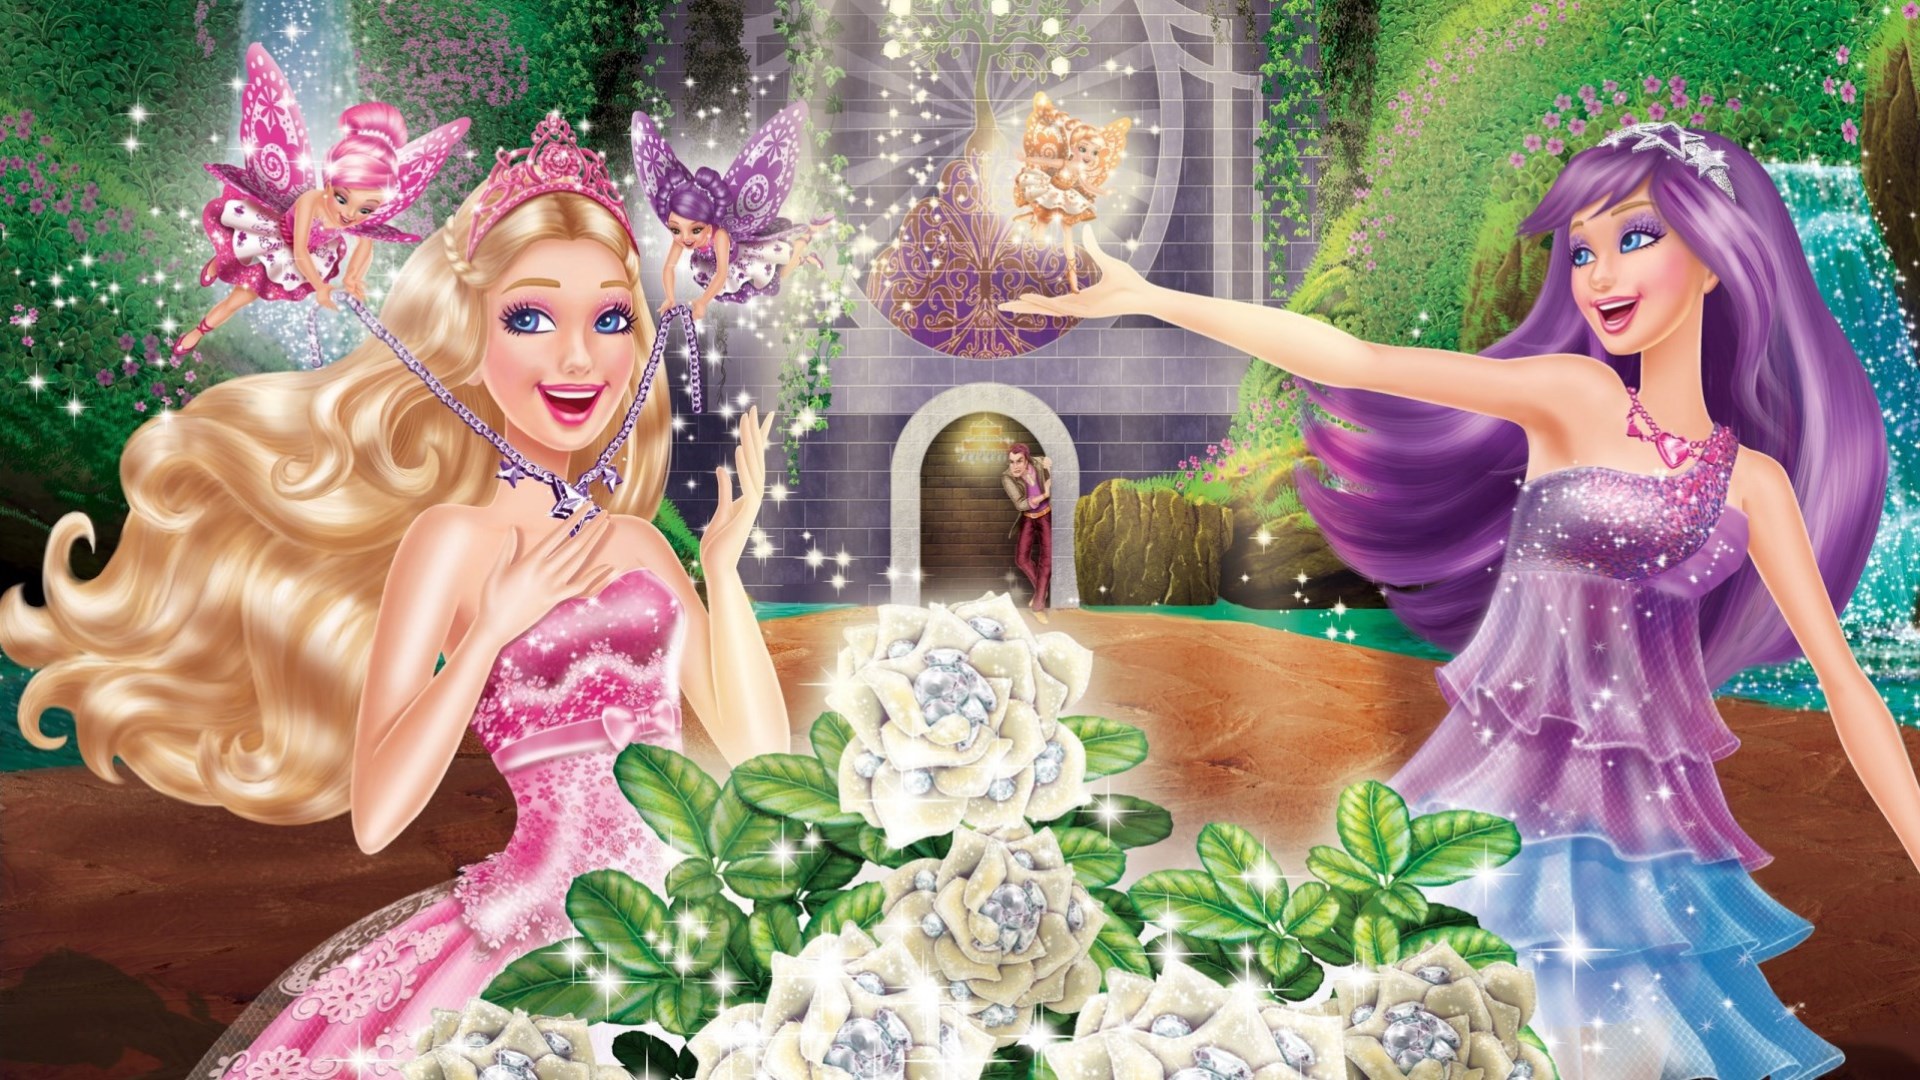 Скачать обои Barbie: Принцесса И Поп Звезда на телефон бесплатно